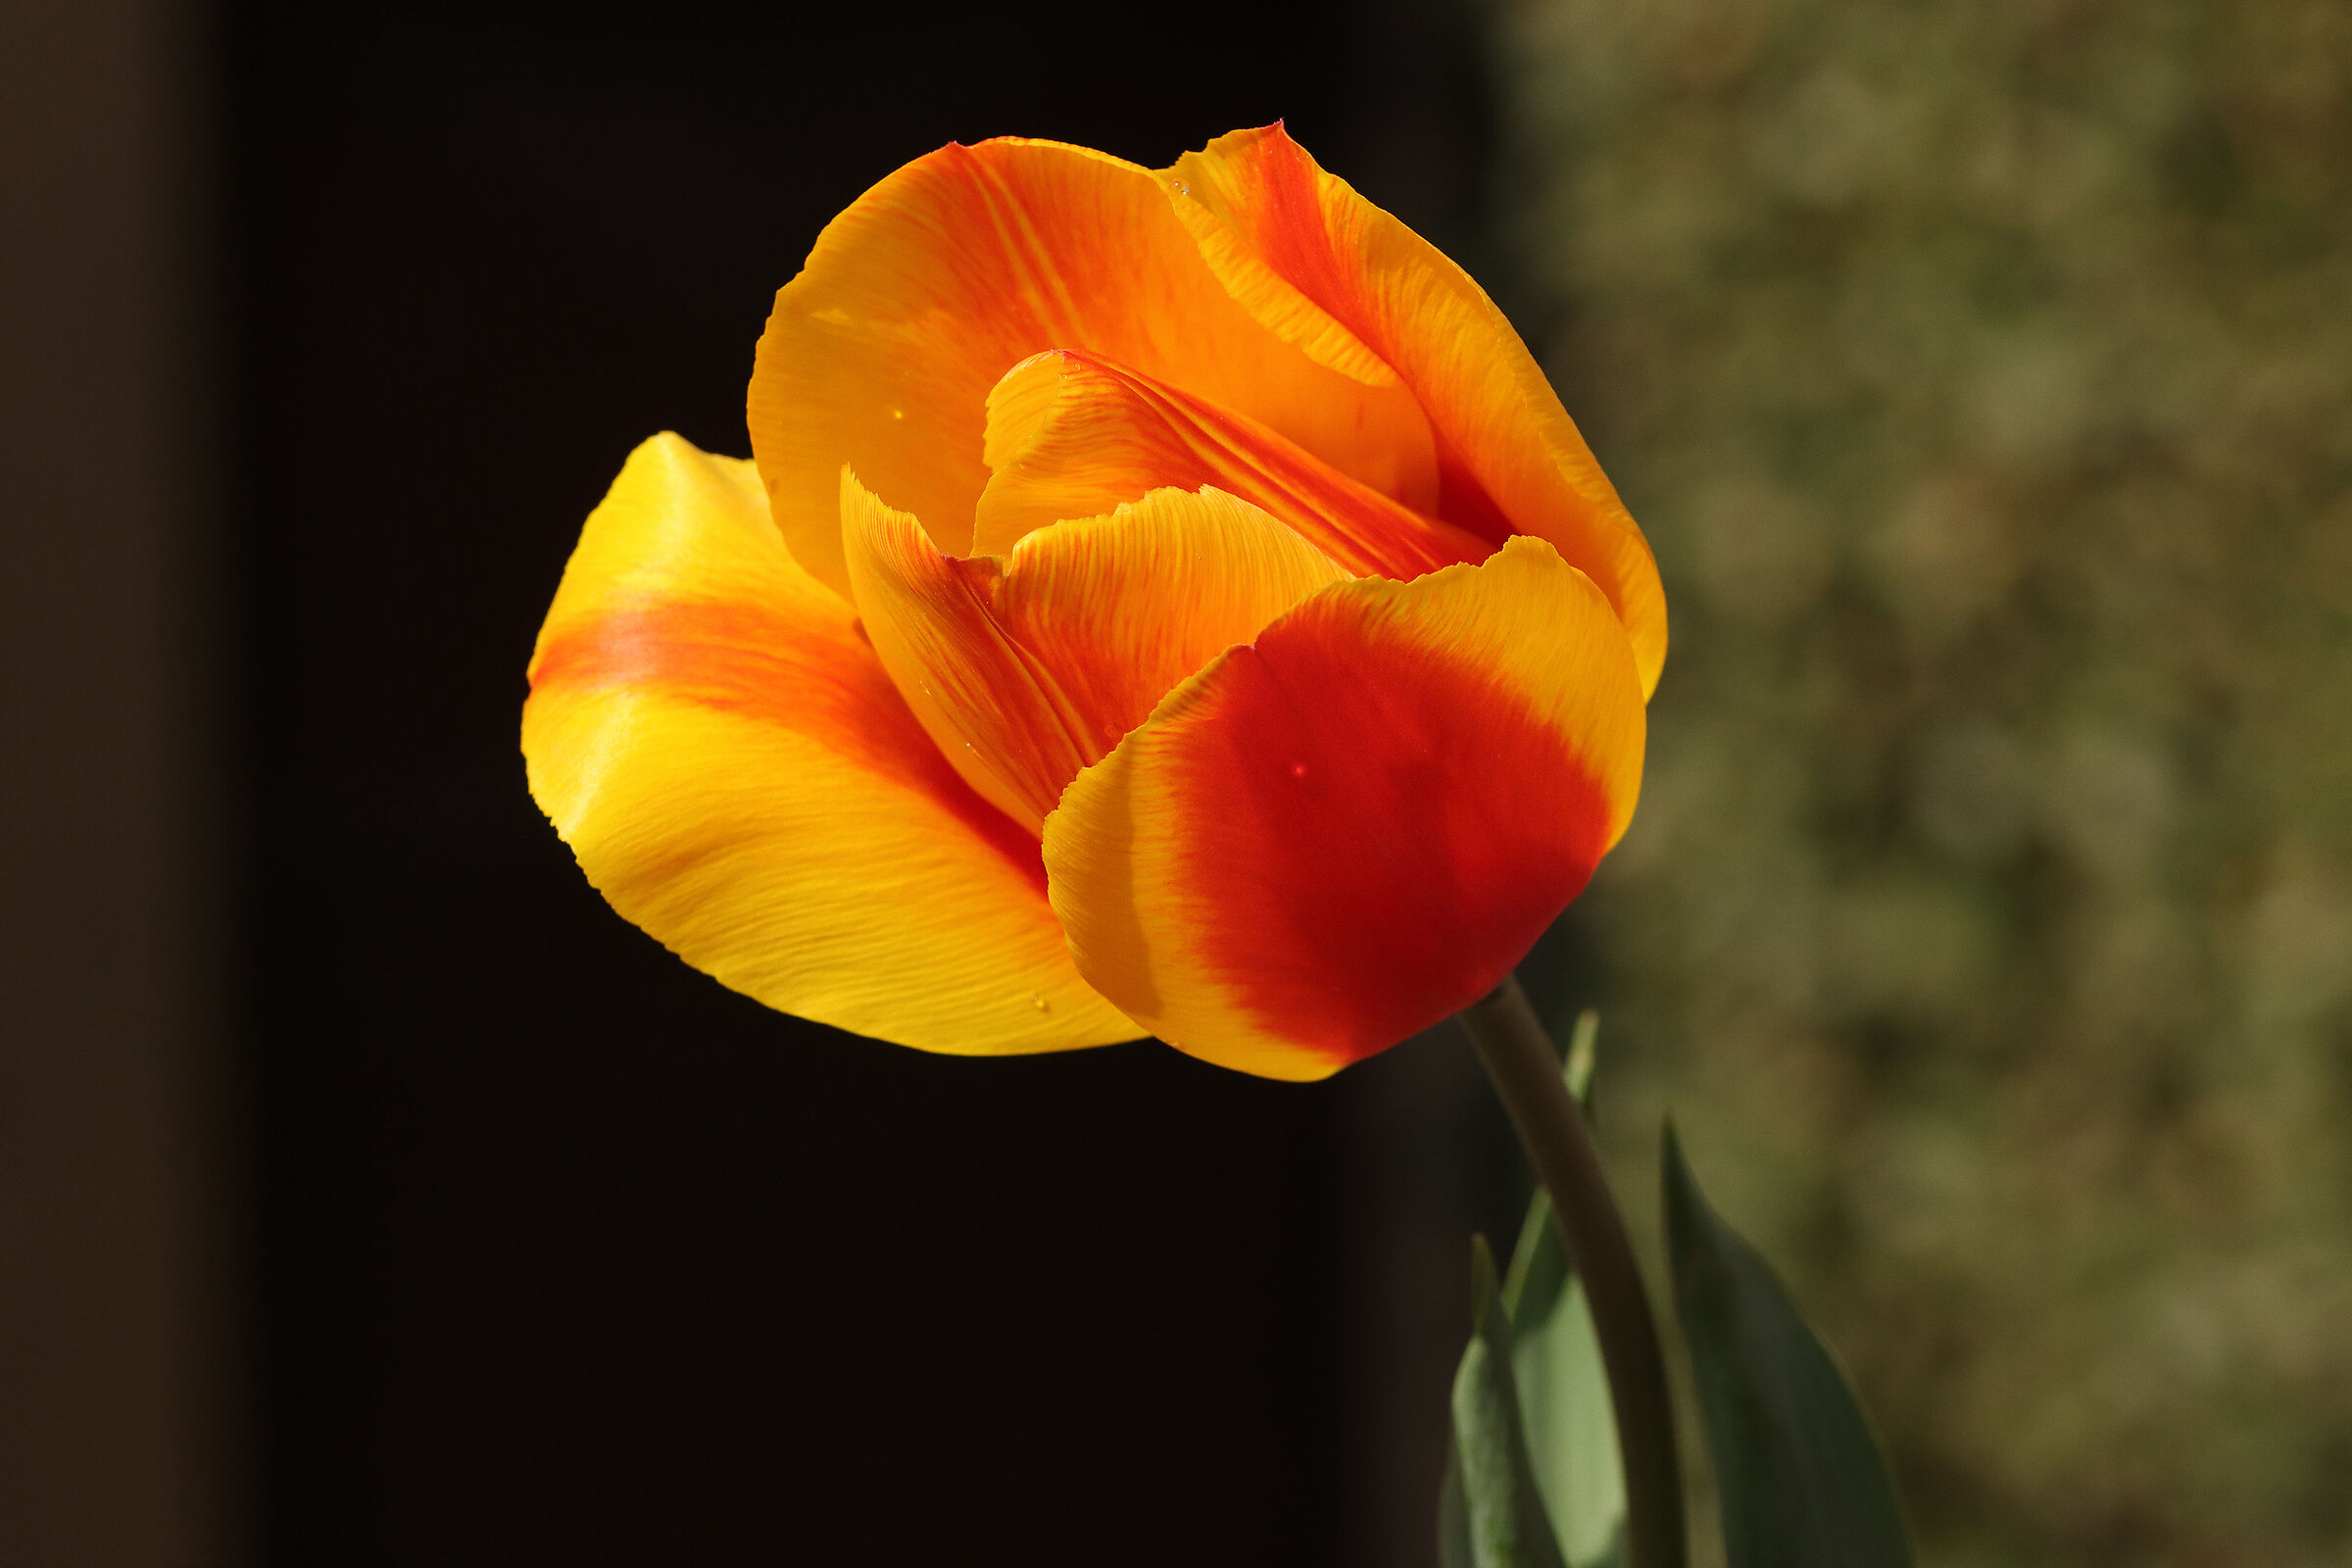 "my" tulips...